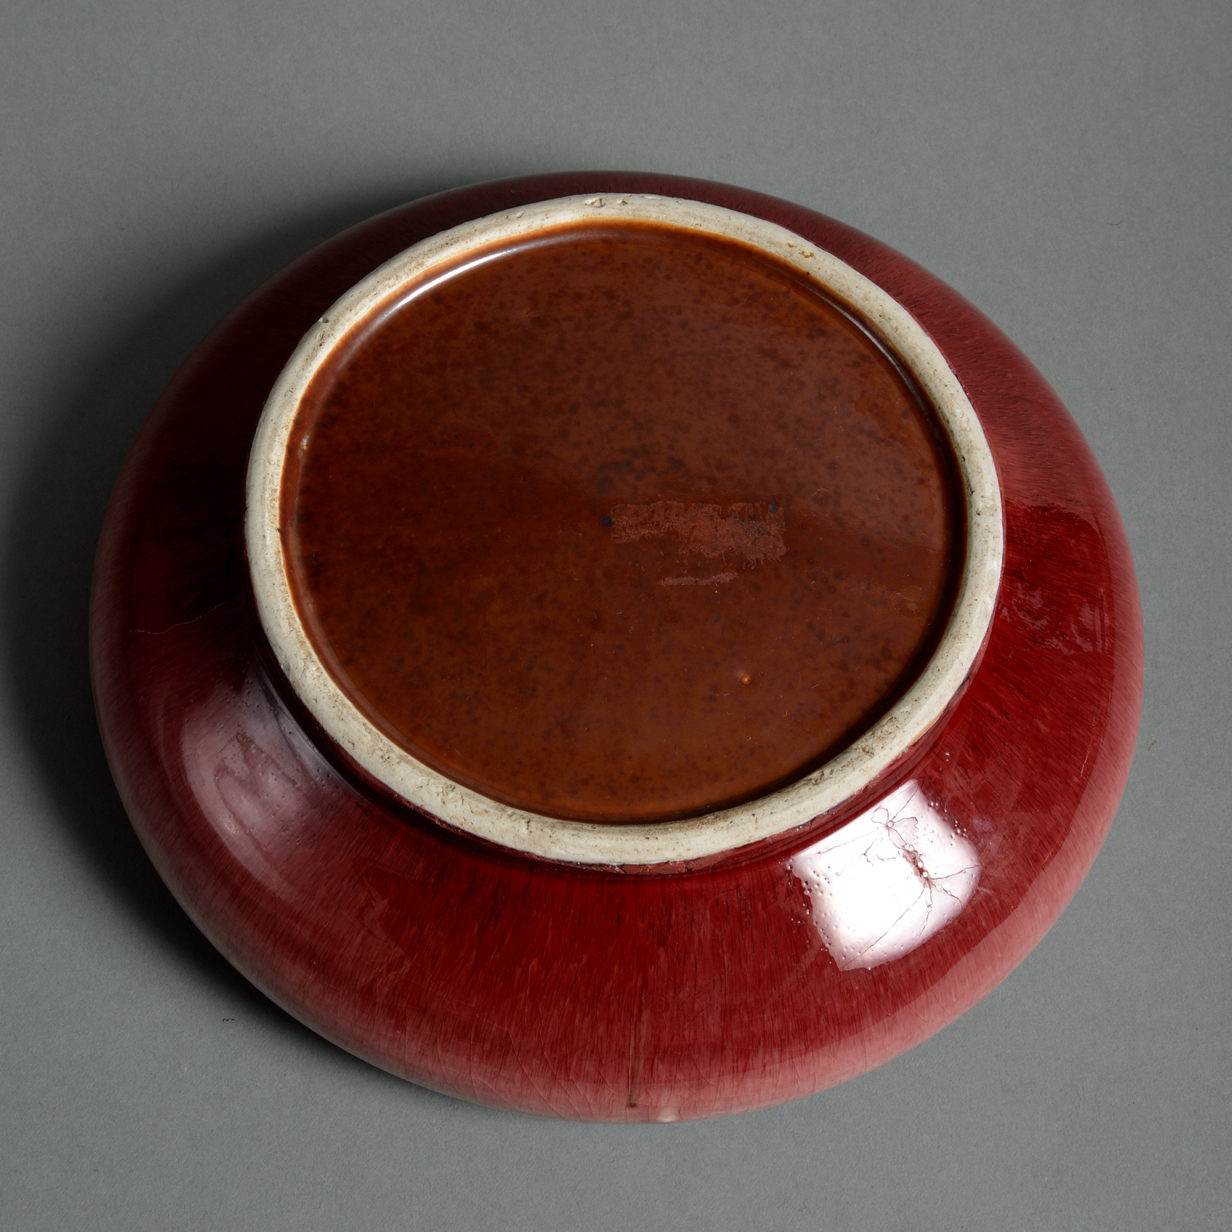 A 19th century sang de boeuf porcelain bowl